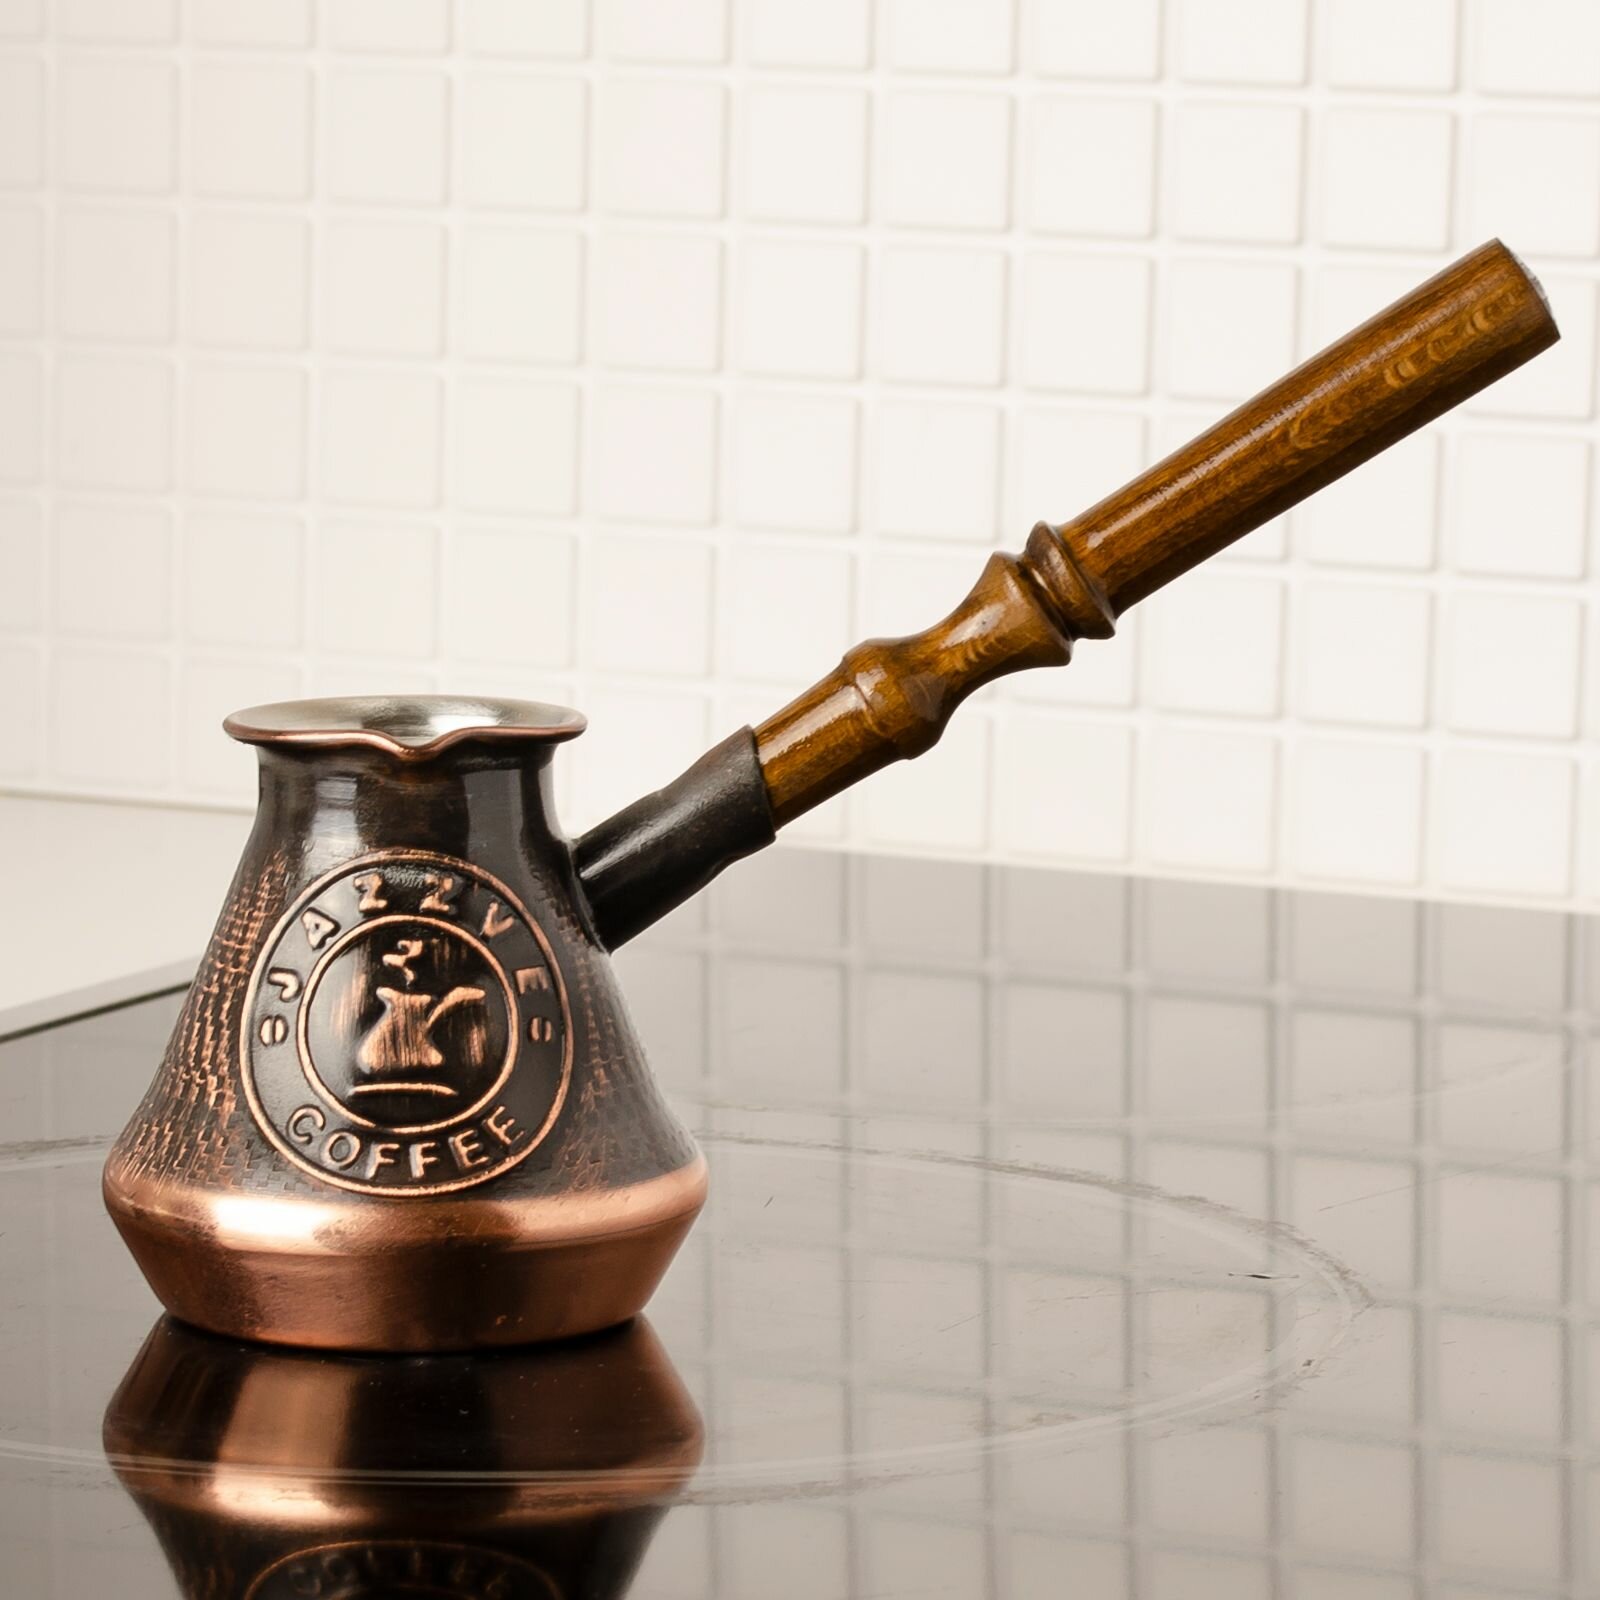 Турка для кофе медная 100 мл (с эмблемой). Армянская джезва  кофеварка  подарок